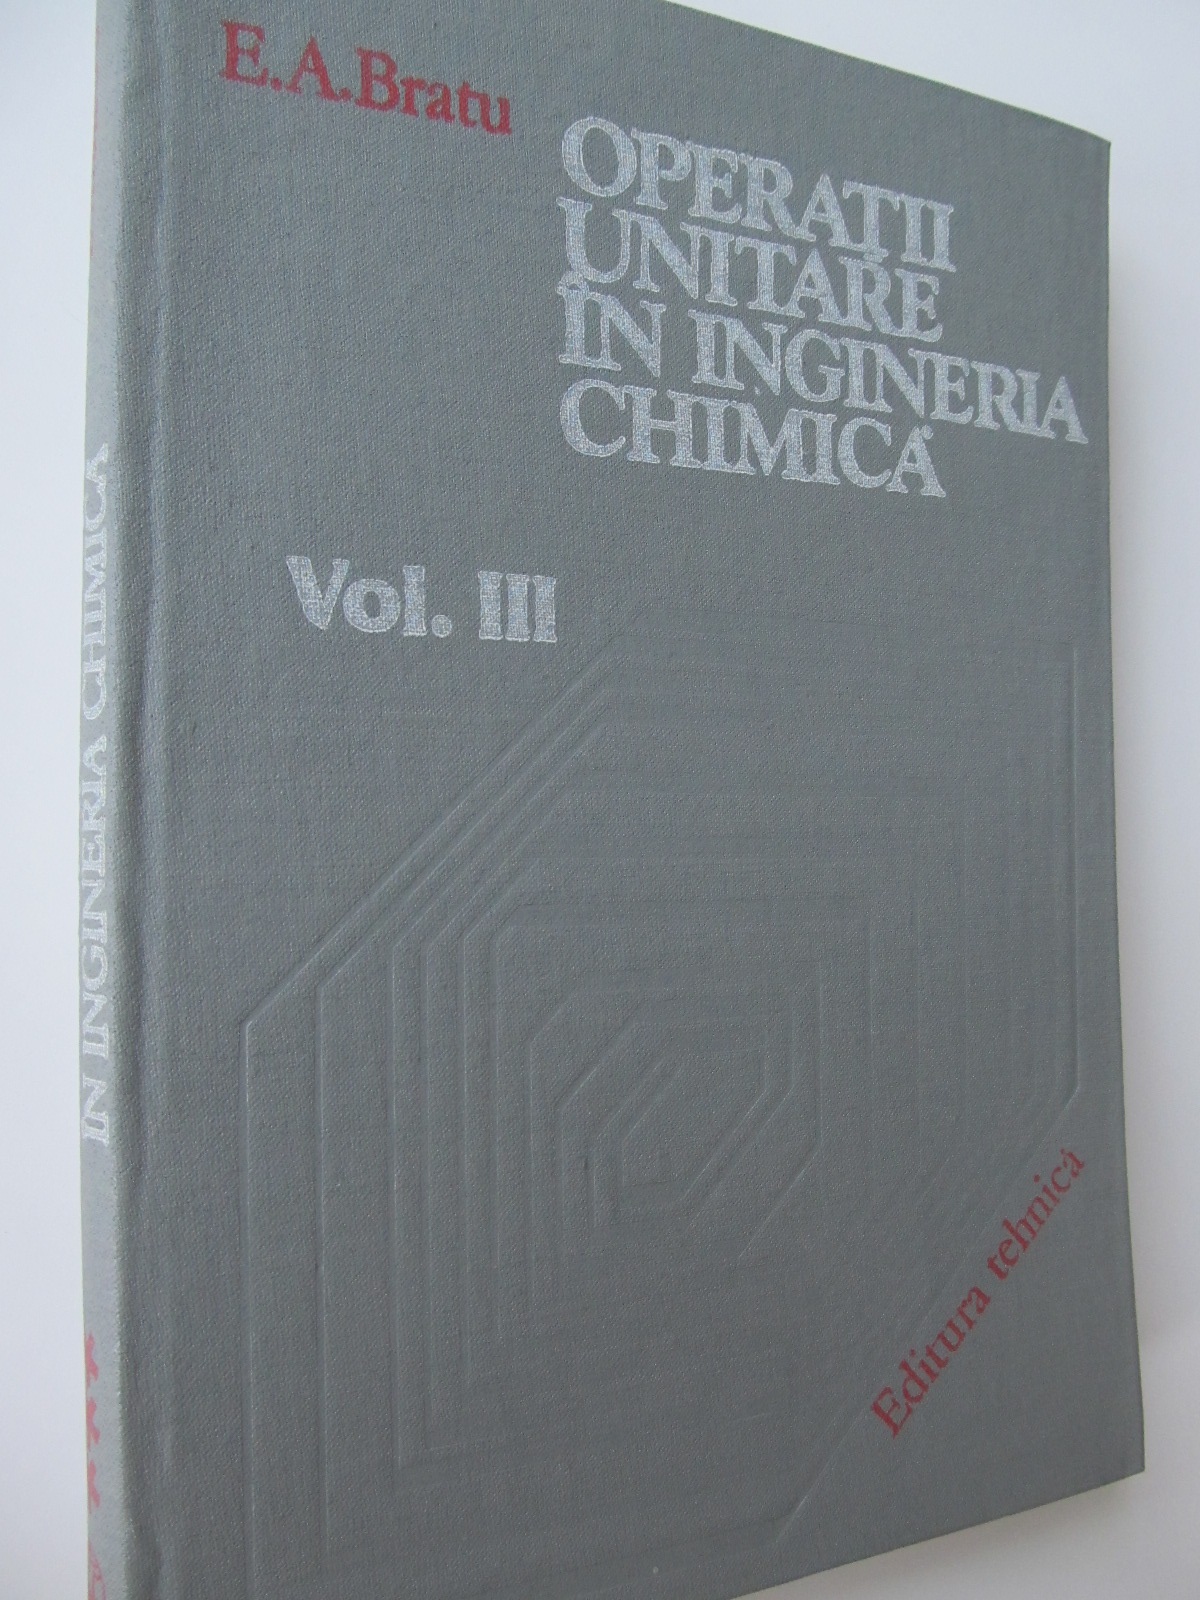 Operatii unitare in ingineria chimica (vol III) - E. A. Bratu | Detalii carte